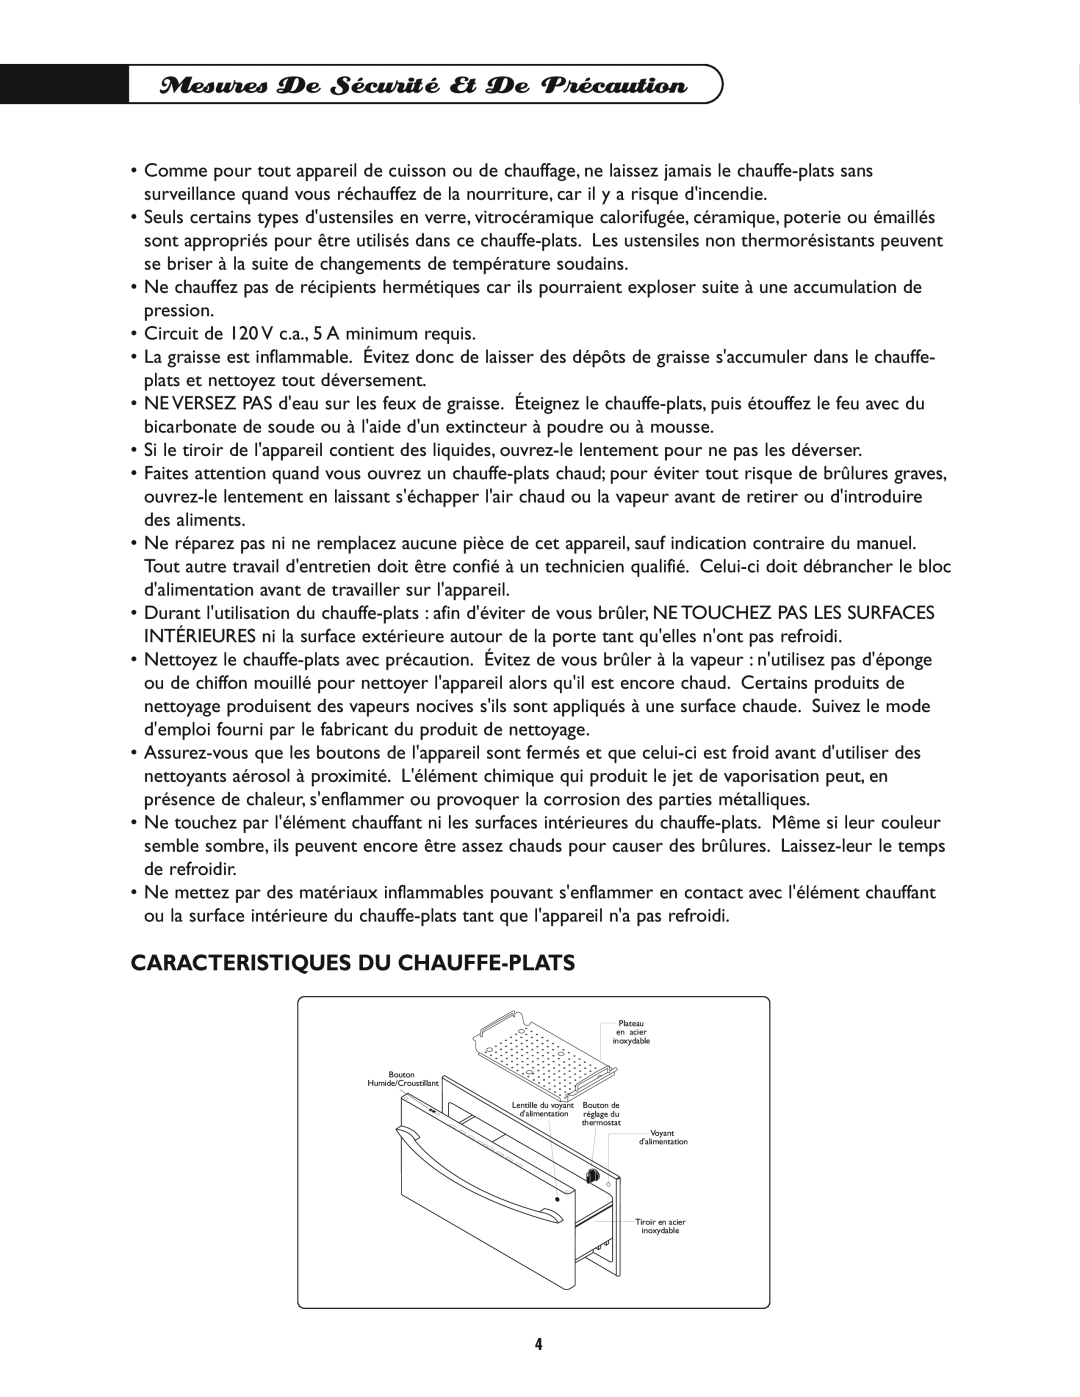 DCS WD-30-BL manual Mesures De Sécurité Et De Précaution, Caracteristiques Du Chauffe-Plats 